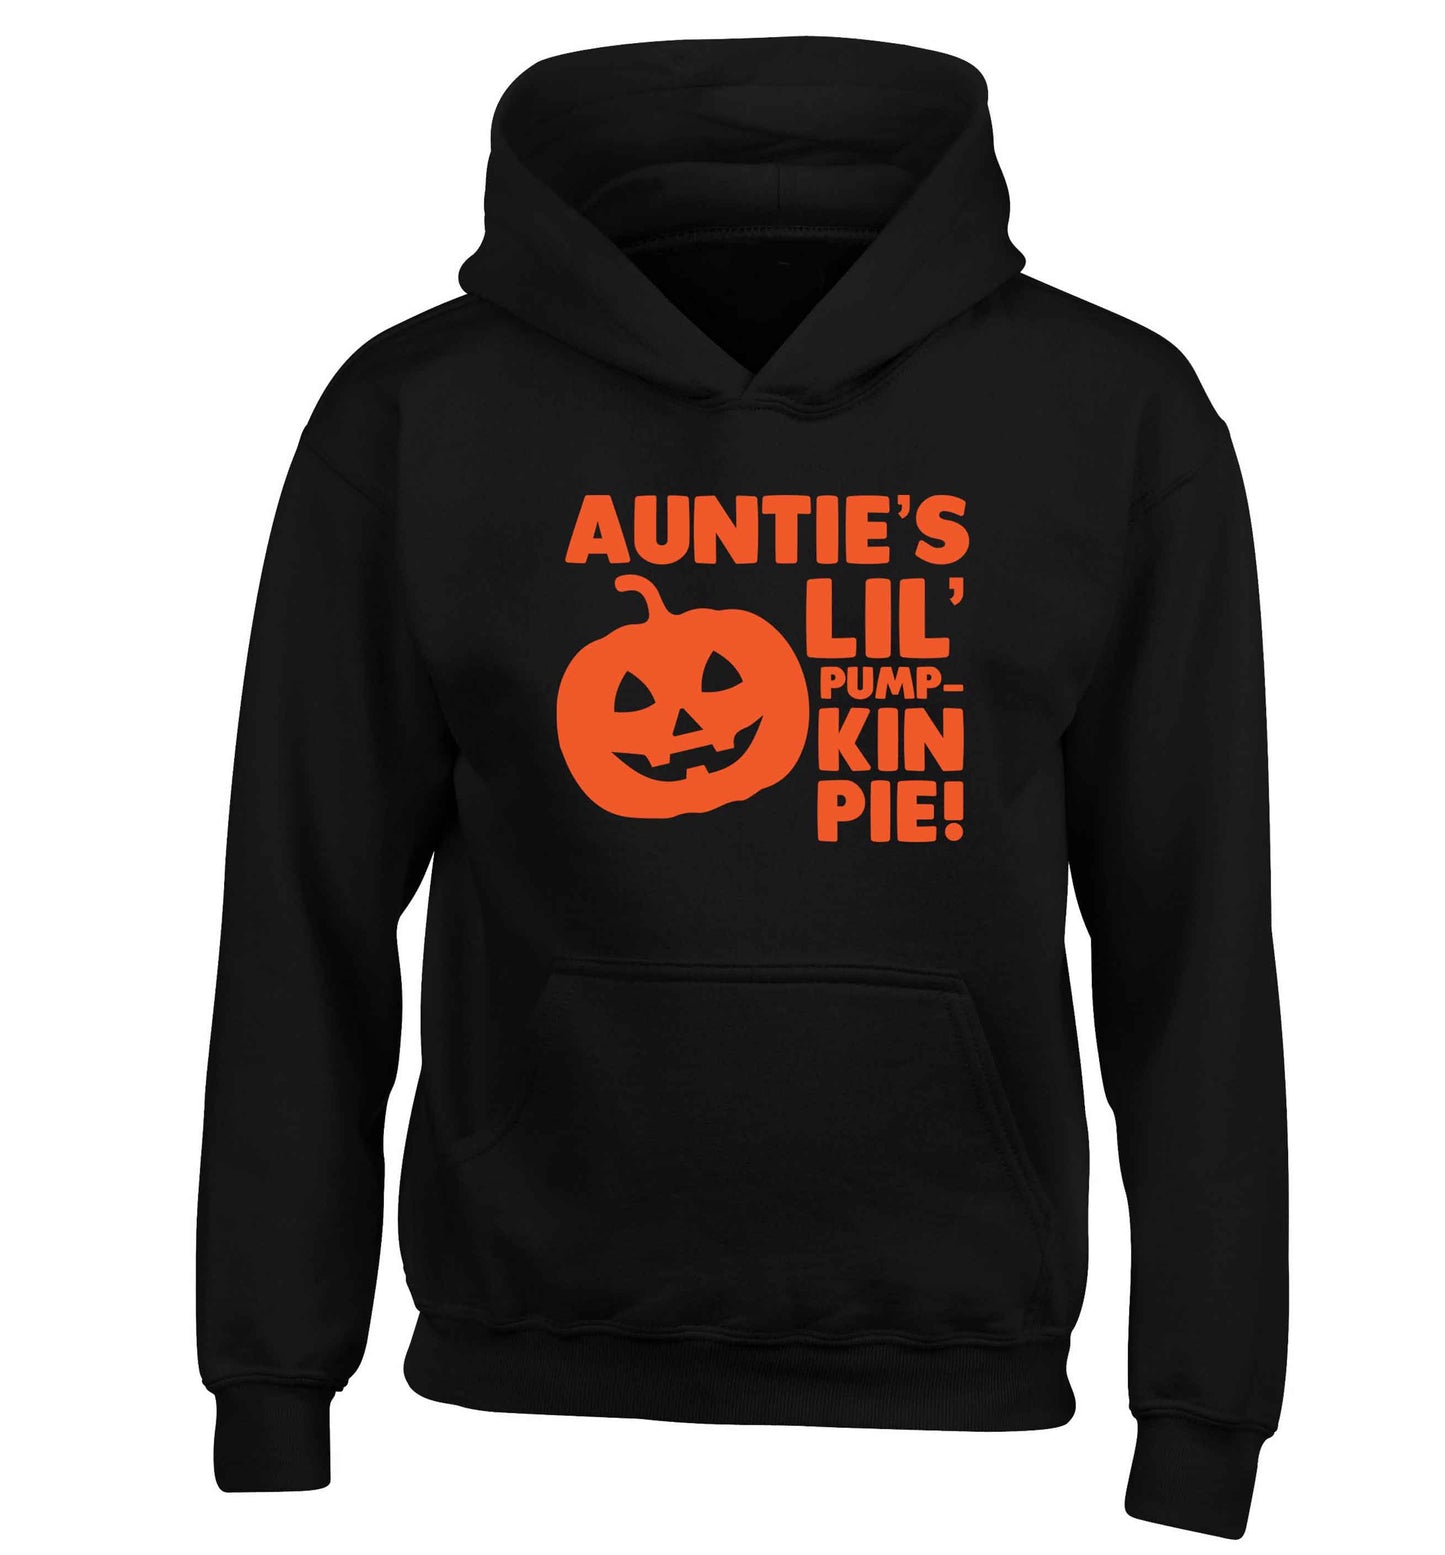 Auntie's lil' pumpkin pie children's black hoodie 12-13 Years